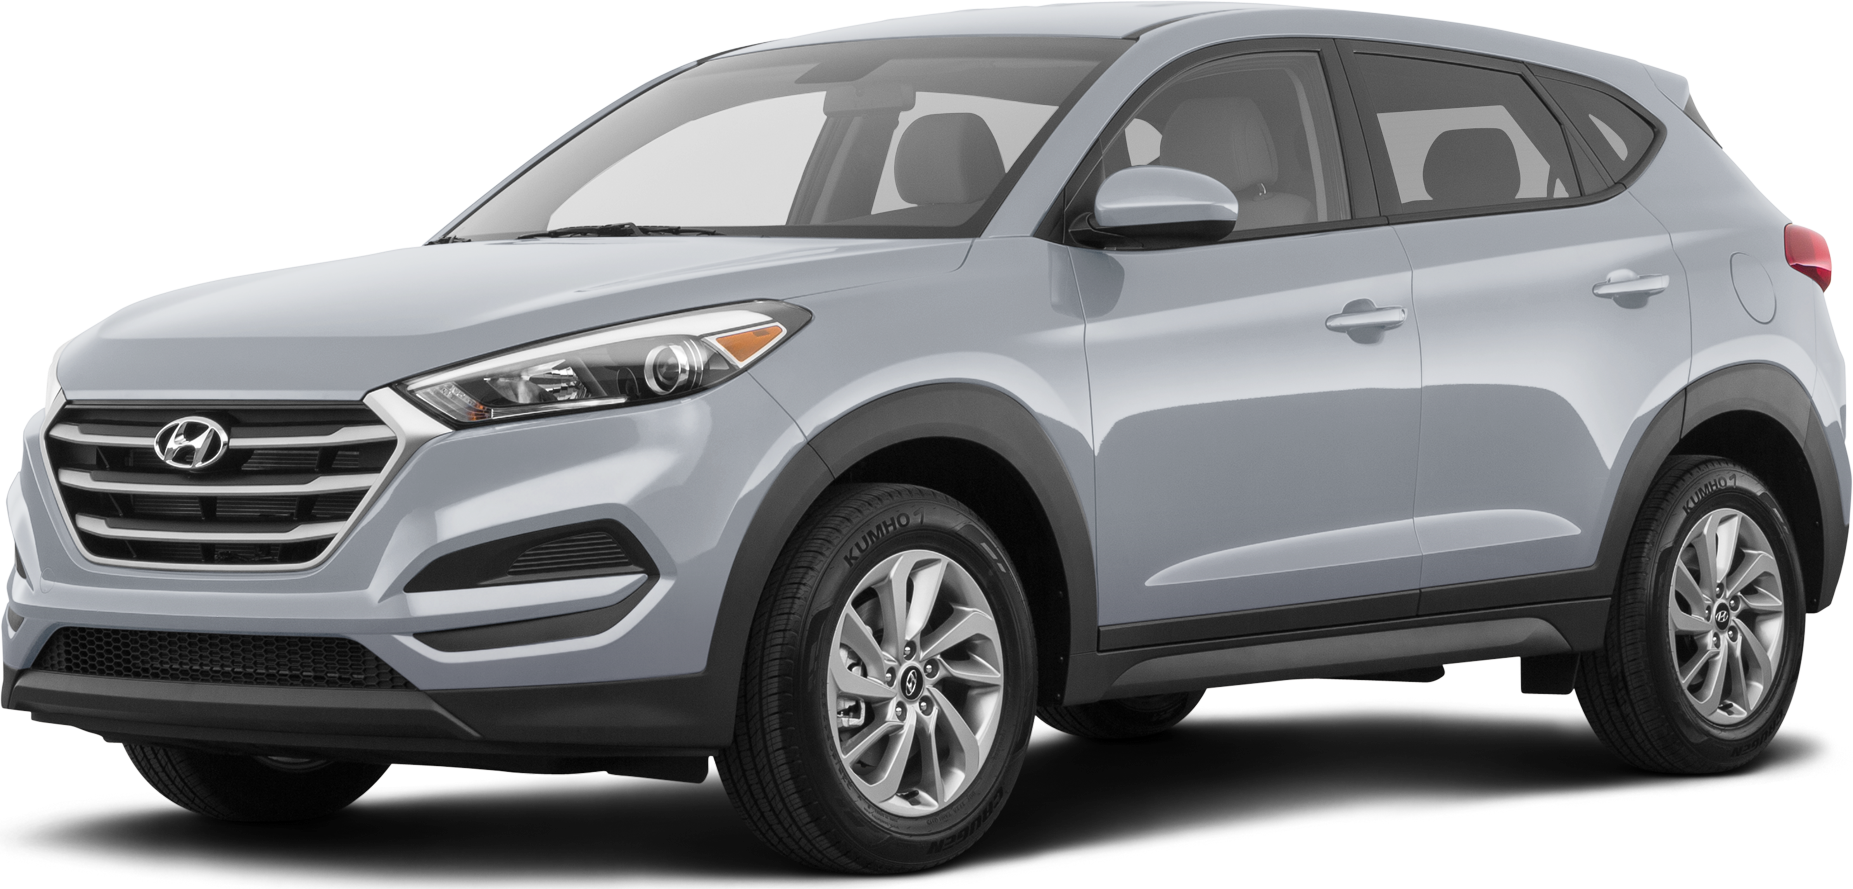 Đánh giá chi tiết xe Hyundai Tucson 2018